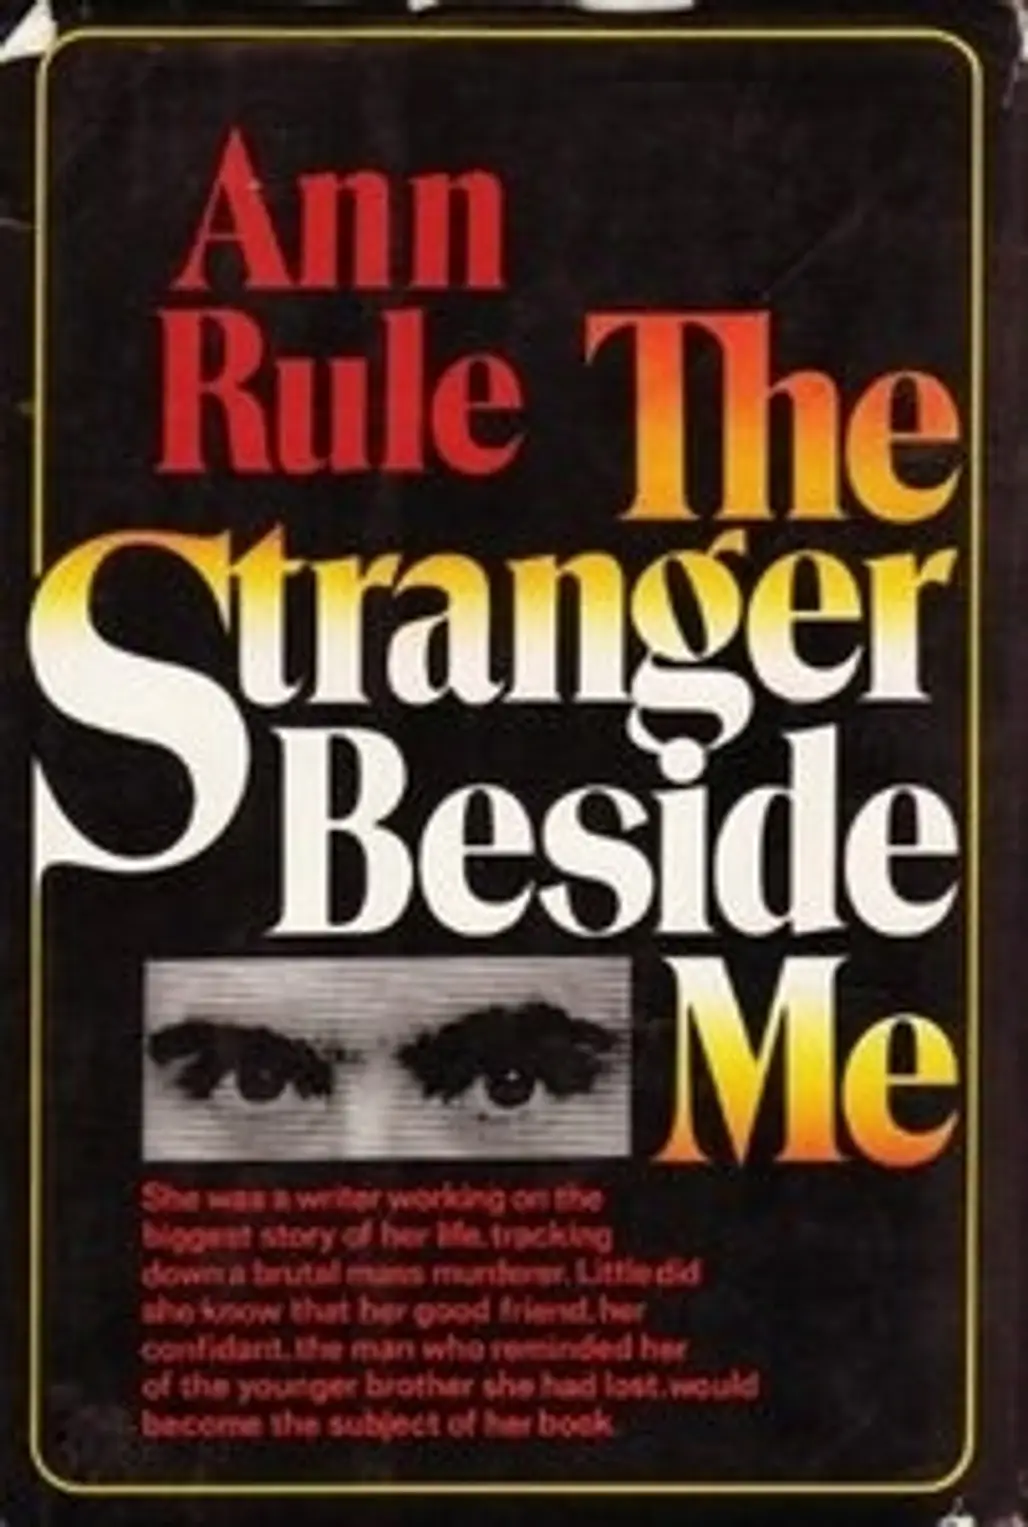 The Stranger beside Me by Ann Rule